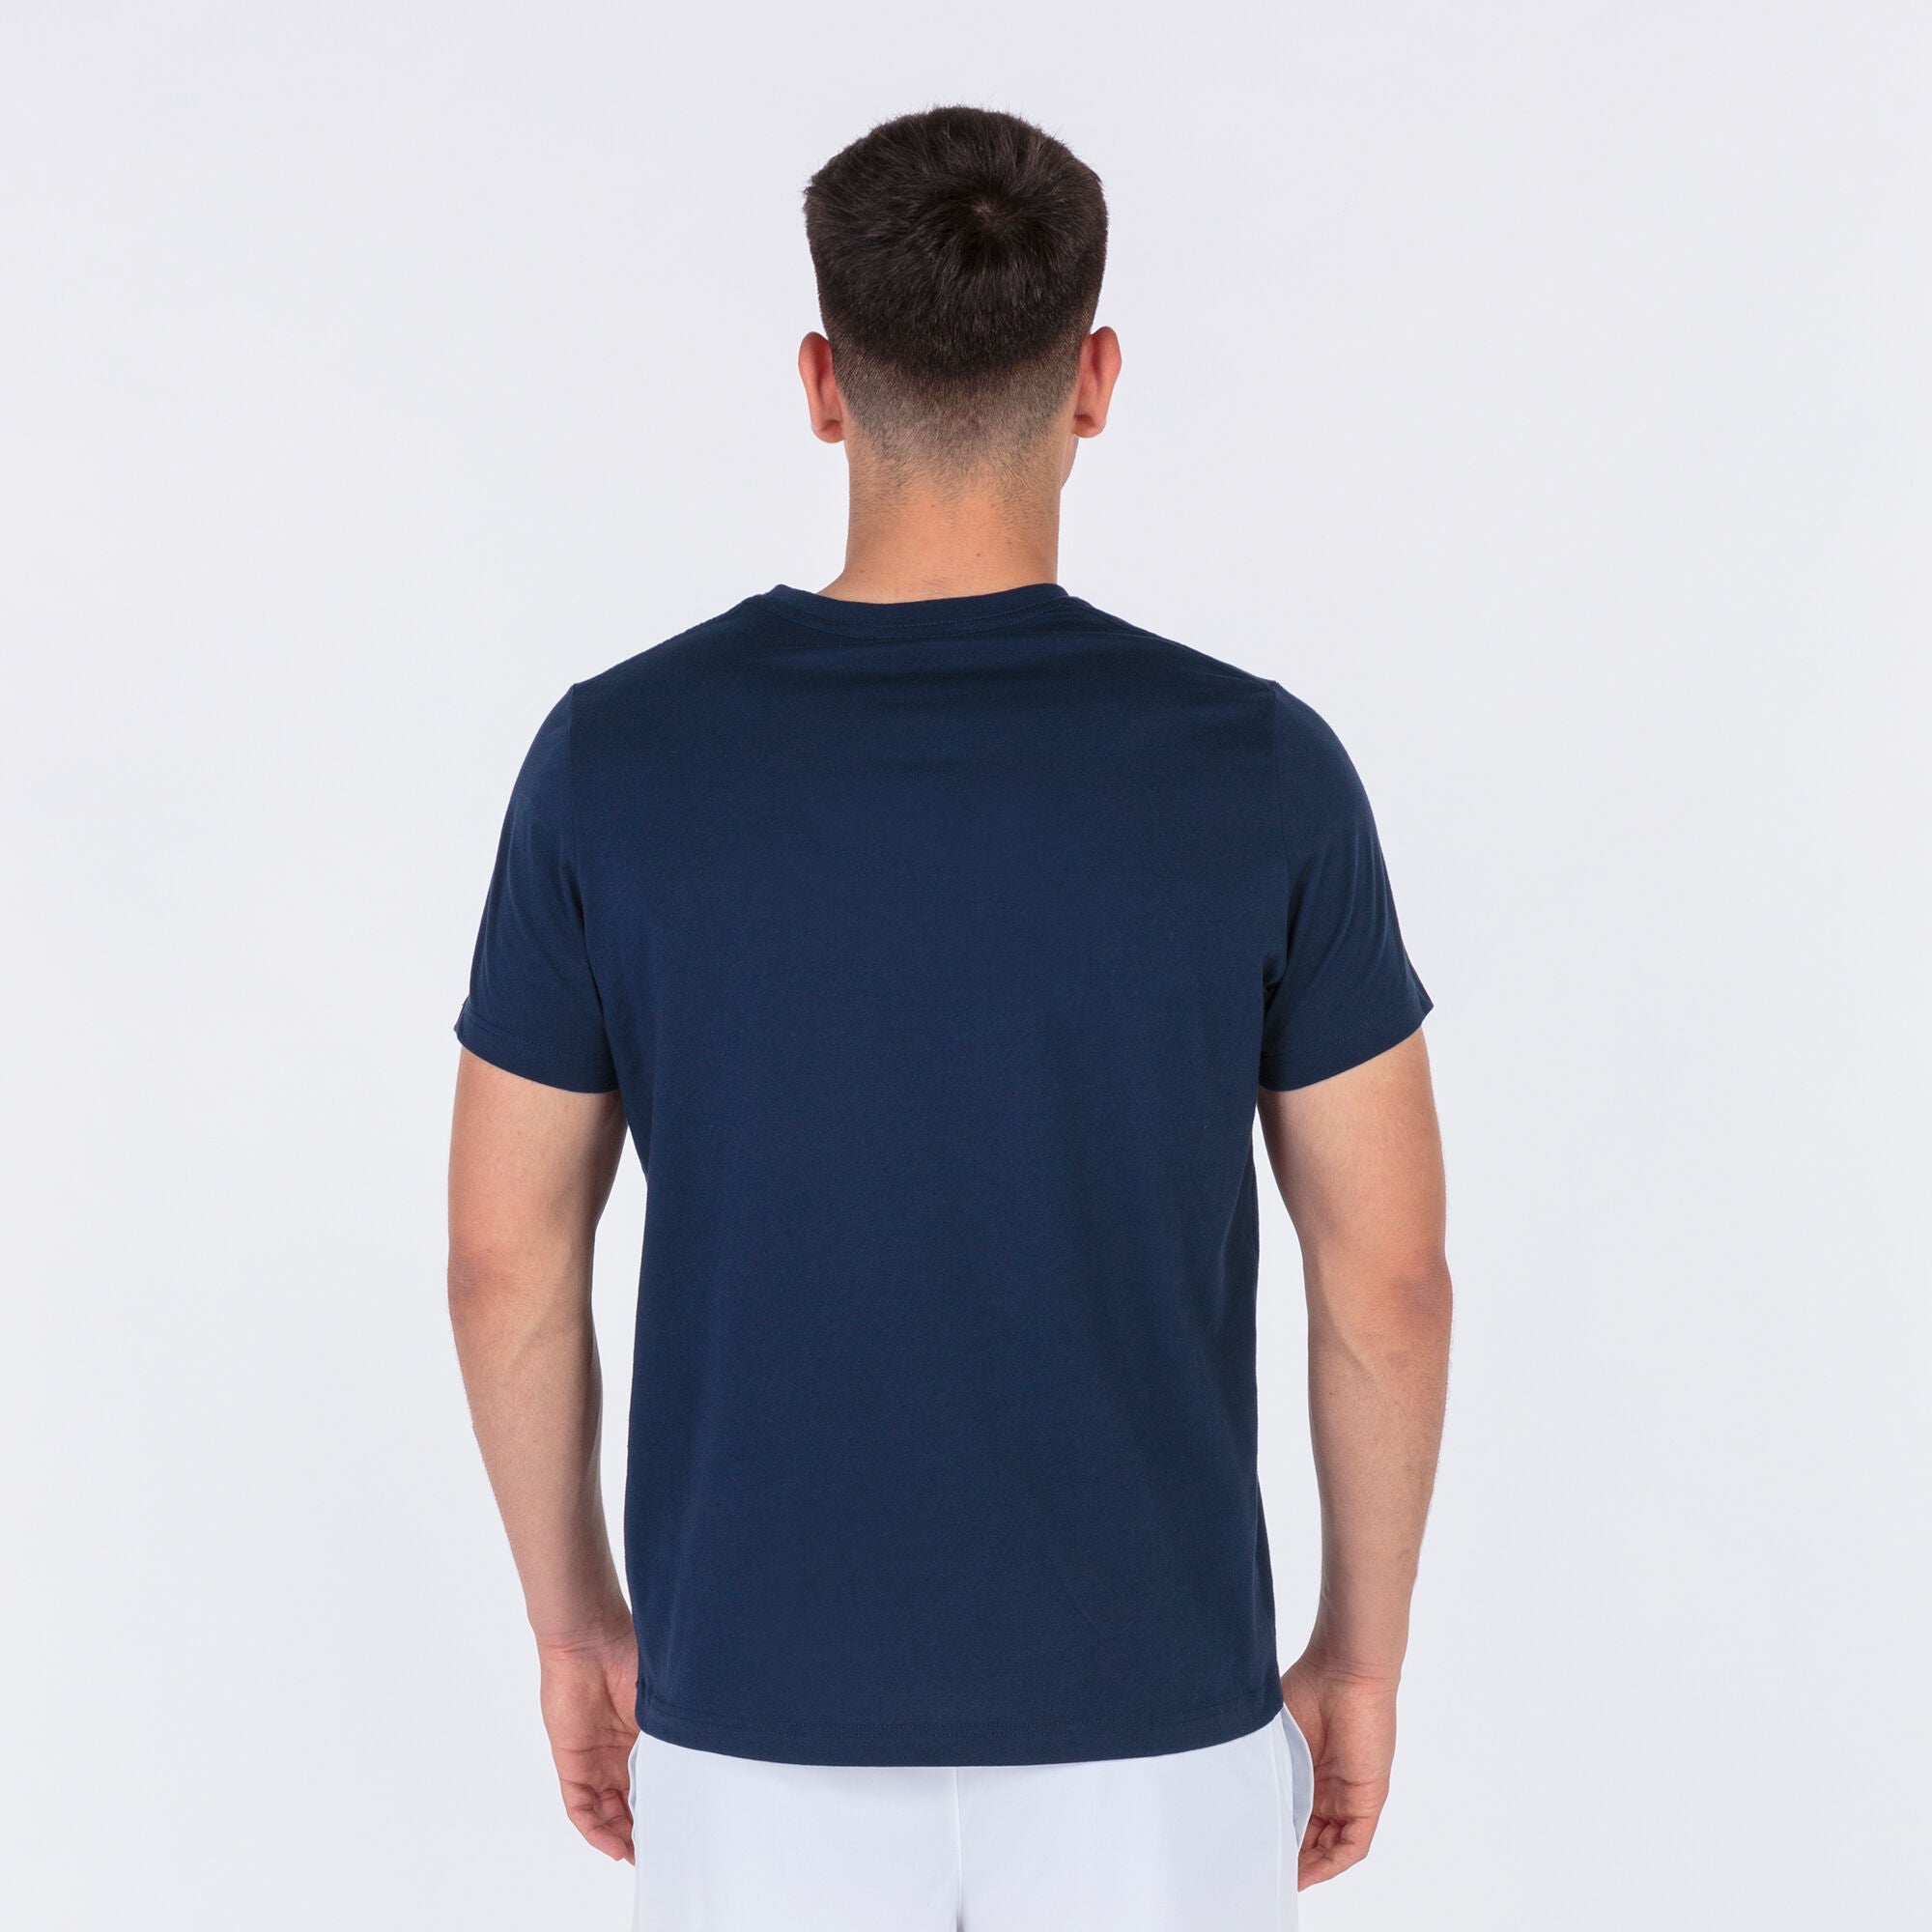 Joma Desert Plain Round Neck T-shirt Men's-2359-Navy